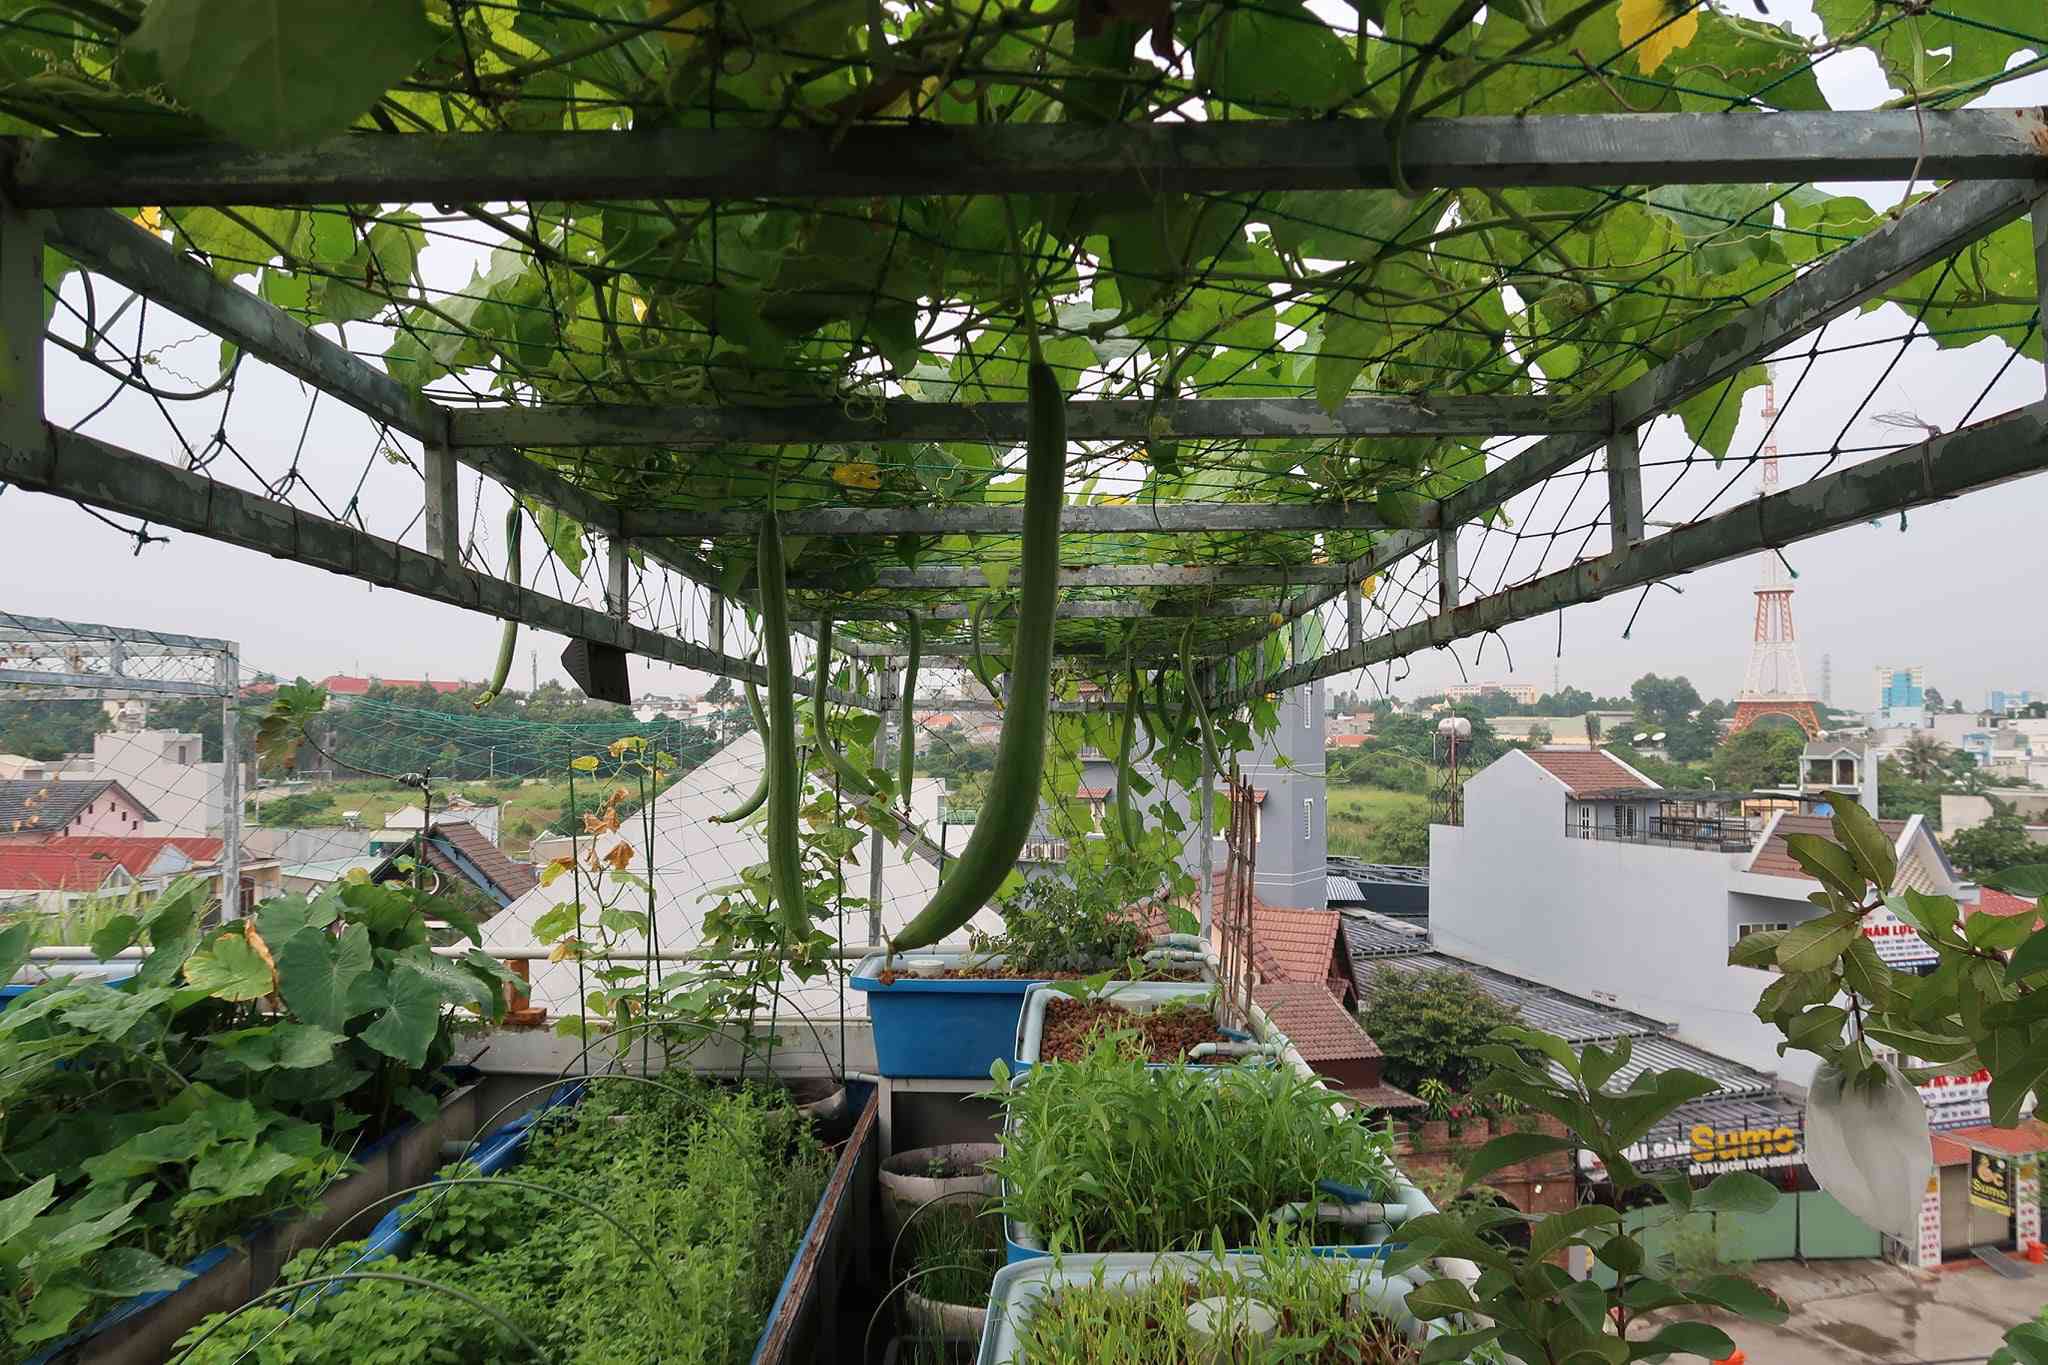 Khám phá 5 mô hình trồng rau trên sân thượng dễ áp dụng nhất hiện nay